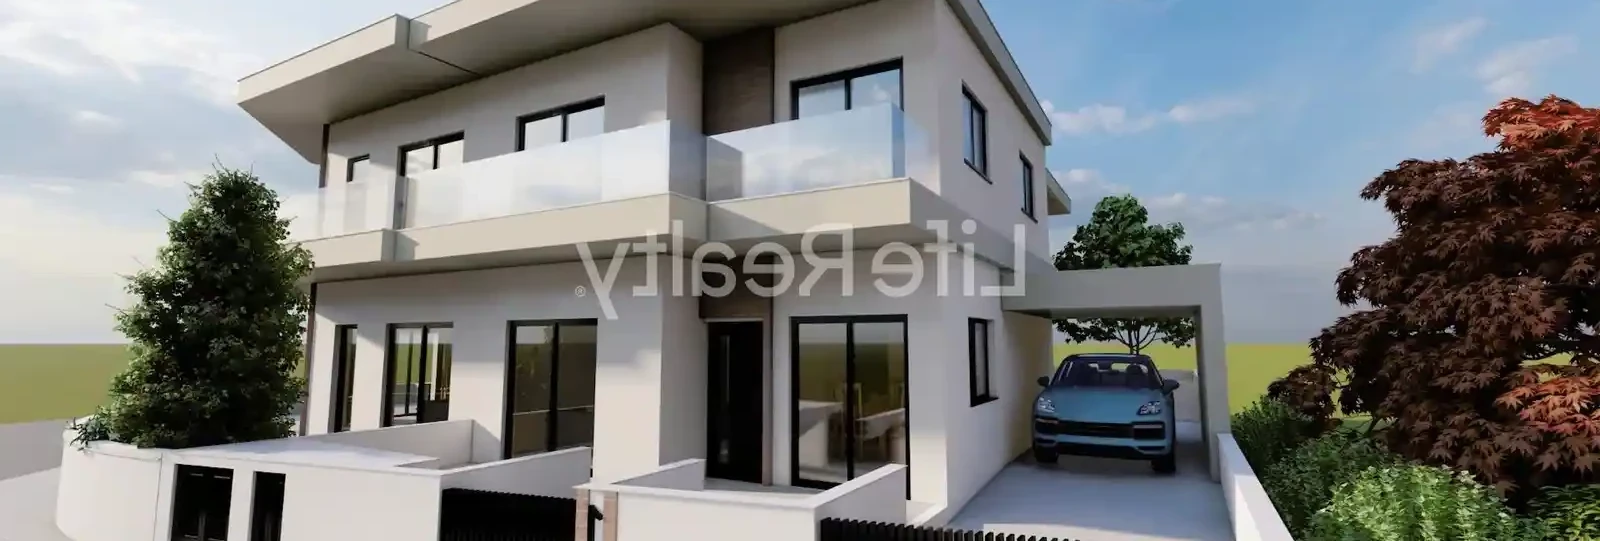 3-bedroom detached house fоr sаle €440.000, image 1